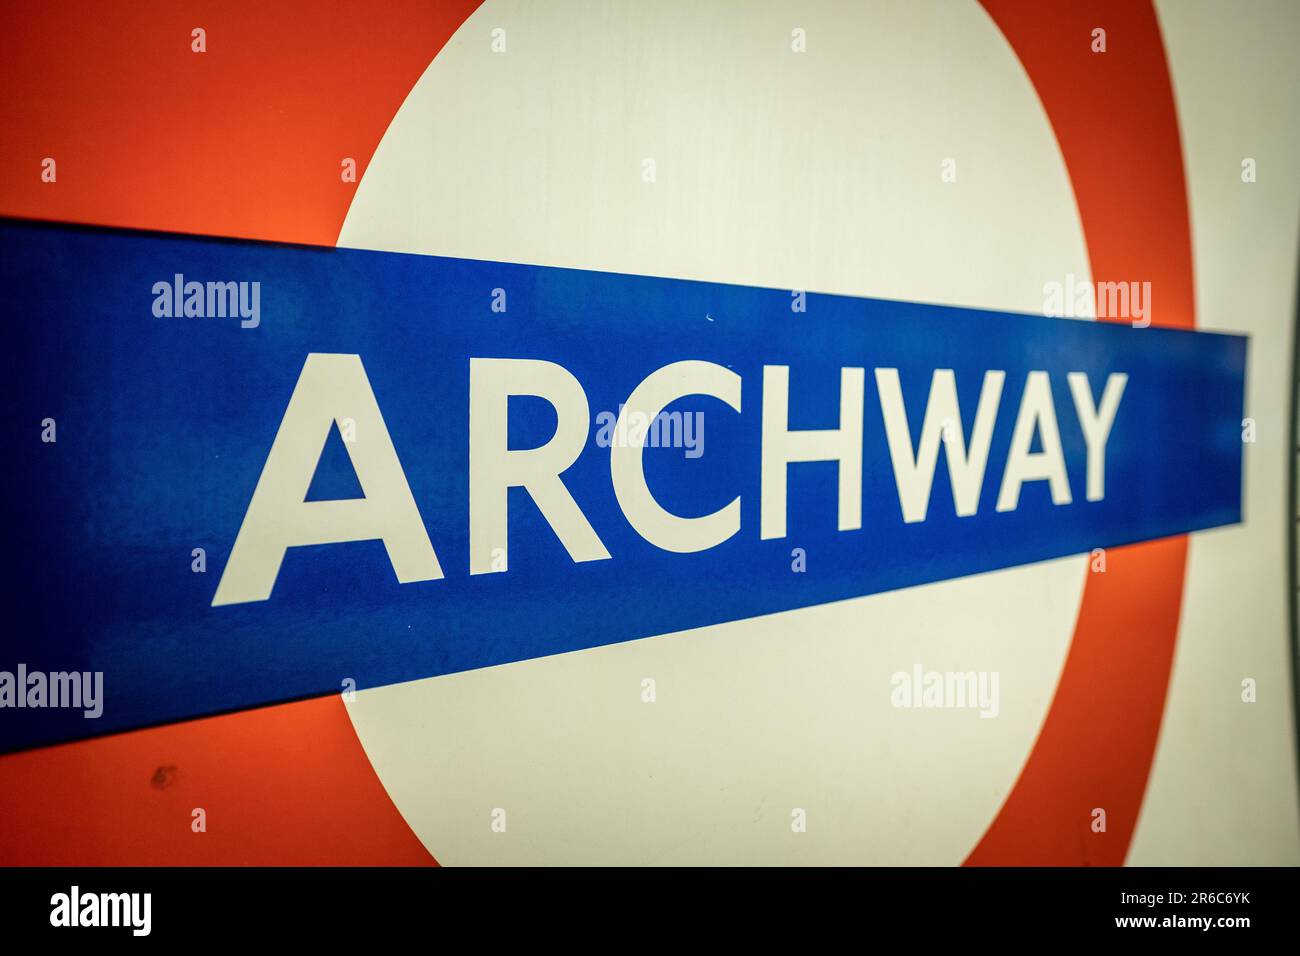 LONDRES - 21 MARS 2023 : station de métro Archway, une station de la ligne Nord dans la région d'Islington, dans le nord de Londres Banque D'Images